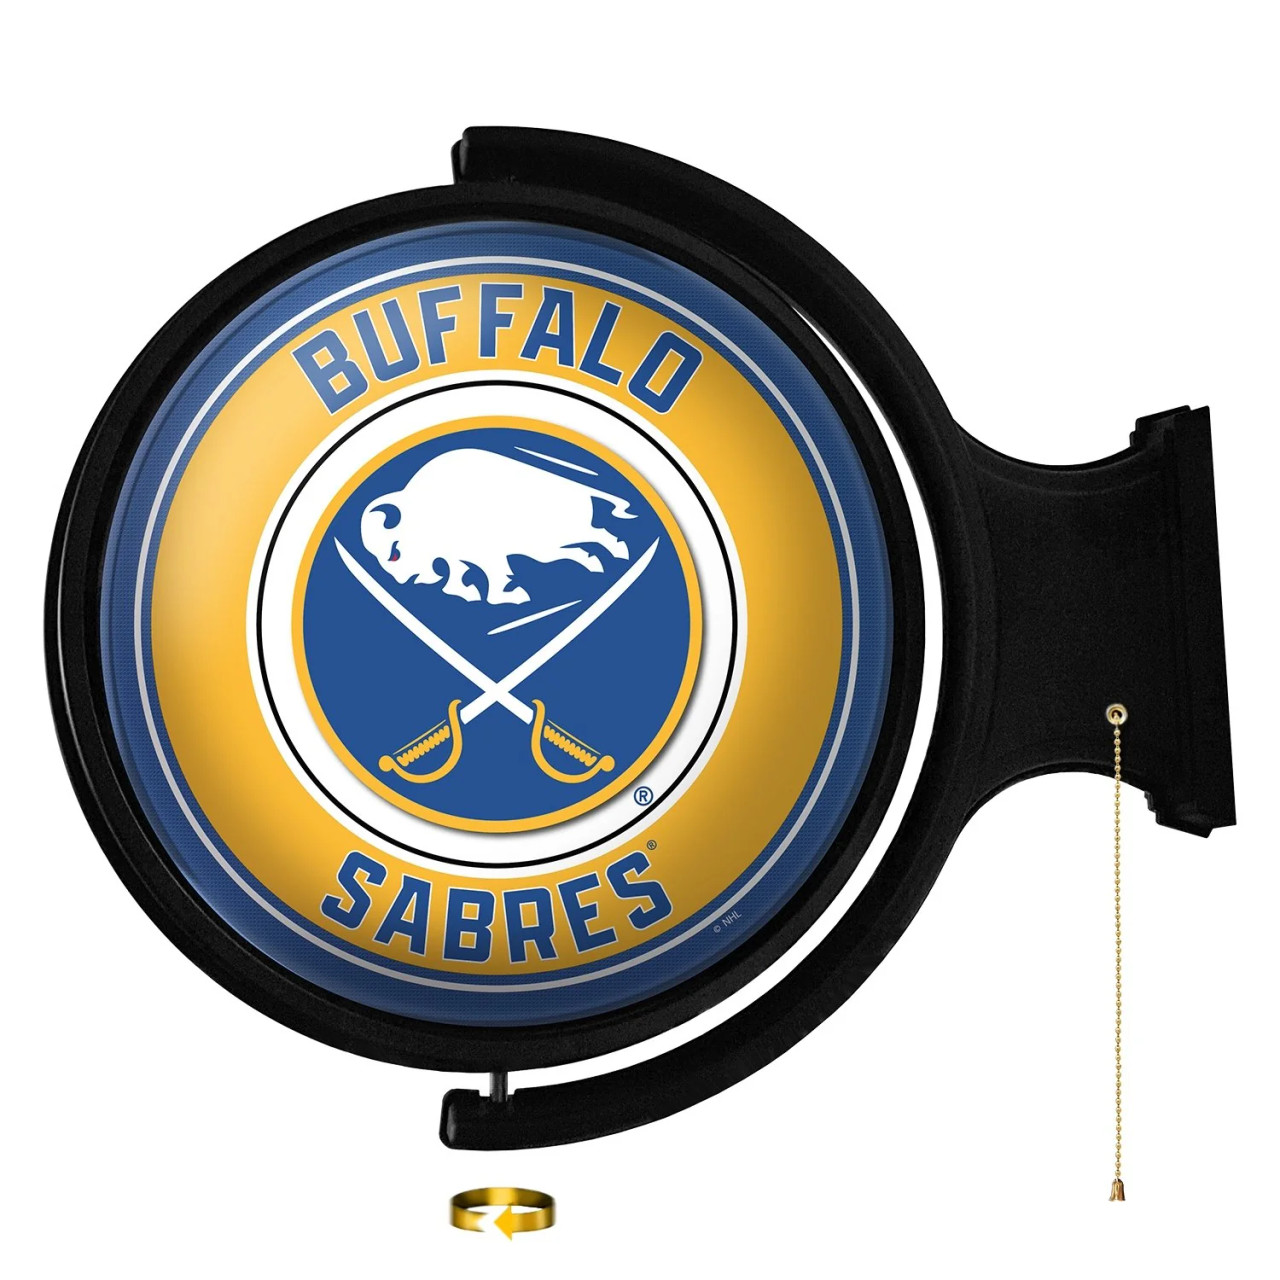 NHBUFF-115-01, BUF, BUFF, Buffalo, Sabres, Sabers, Original, Round, Rotating, Lighted, Wall, Sign, NHBUFF-115-01, NHL, The Fan-Brand, 687181908679